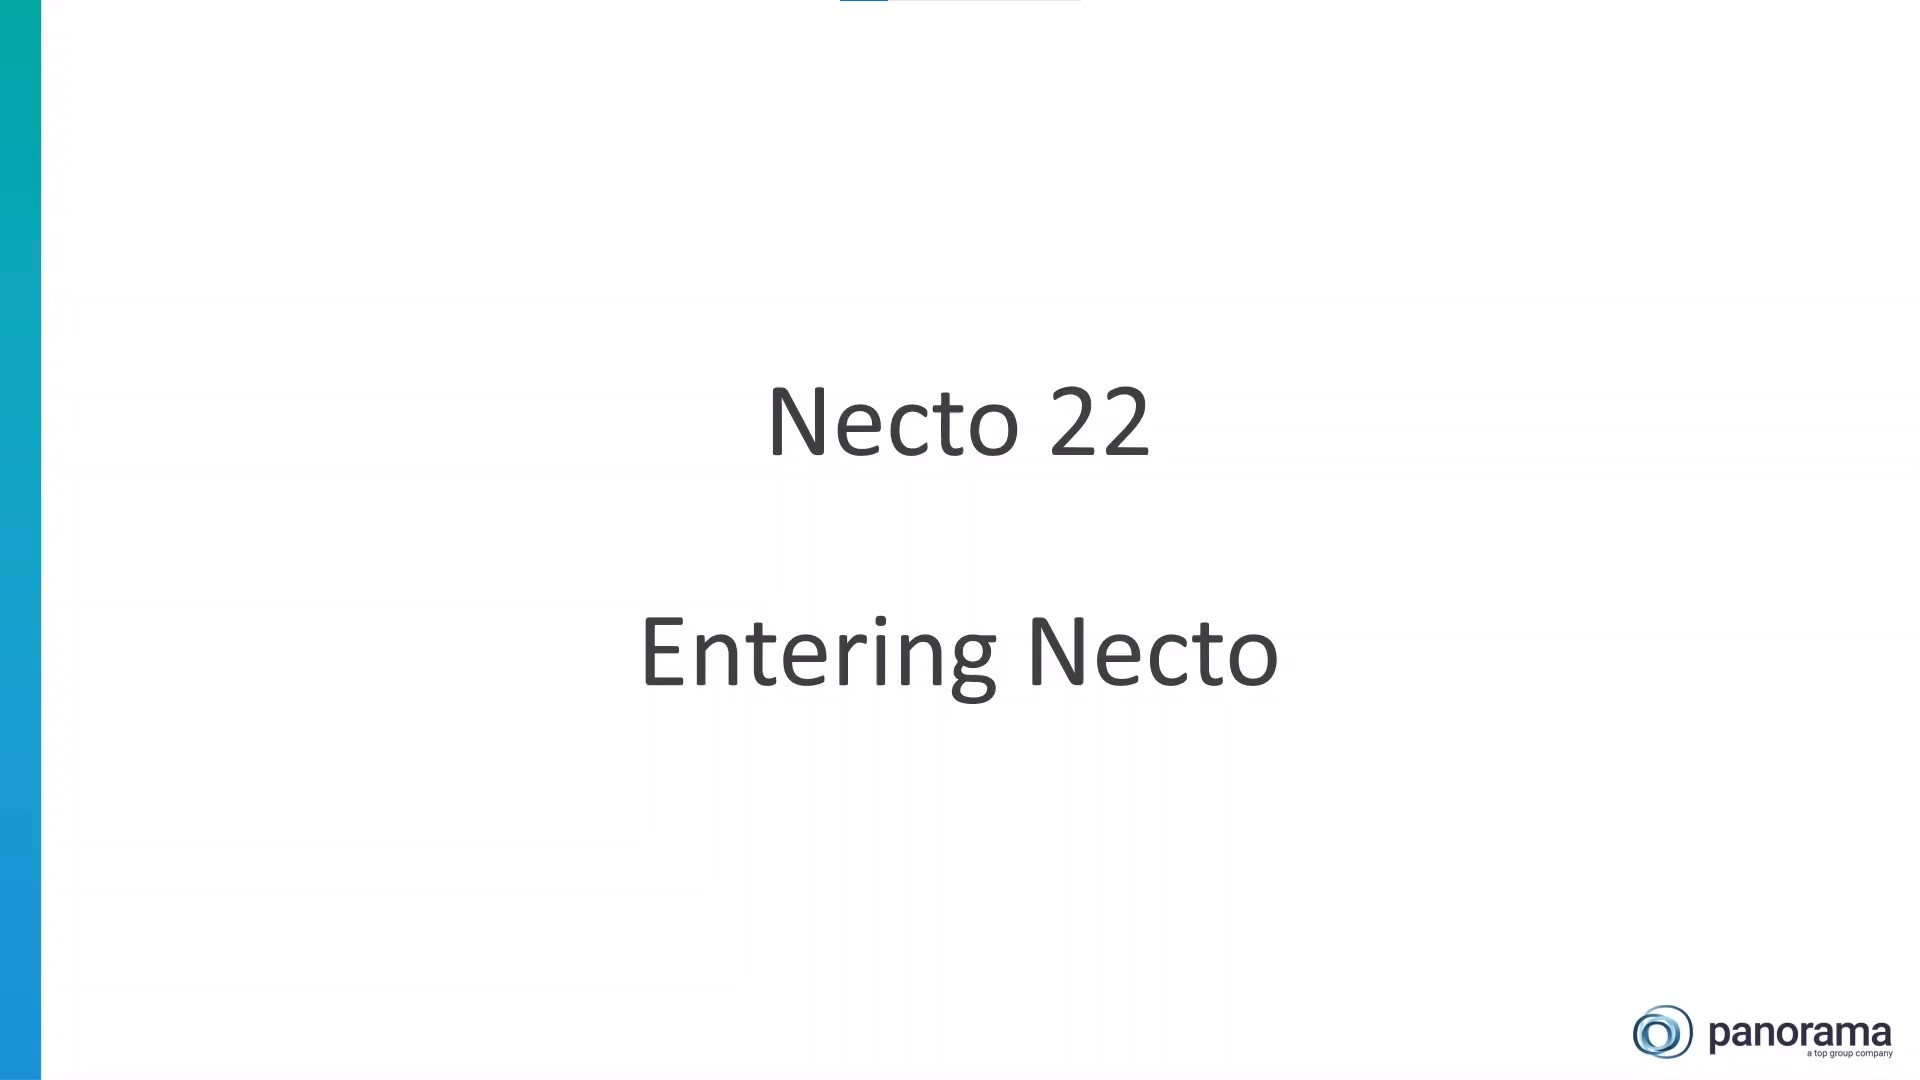 Entering Necto